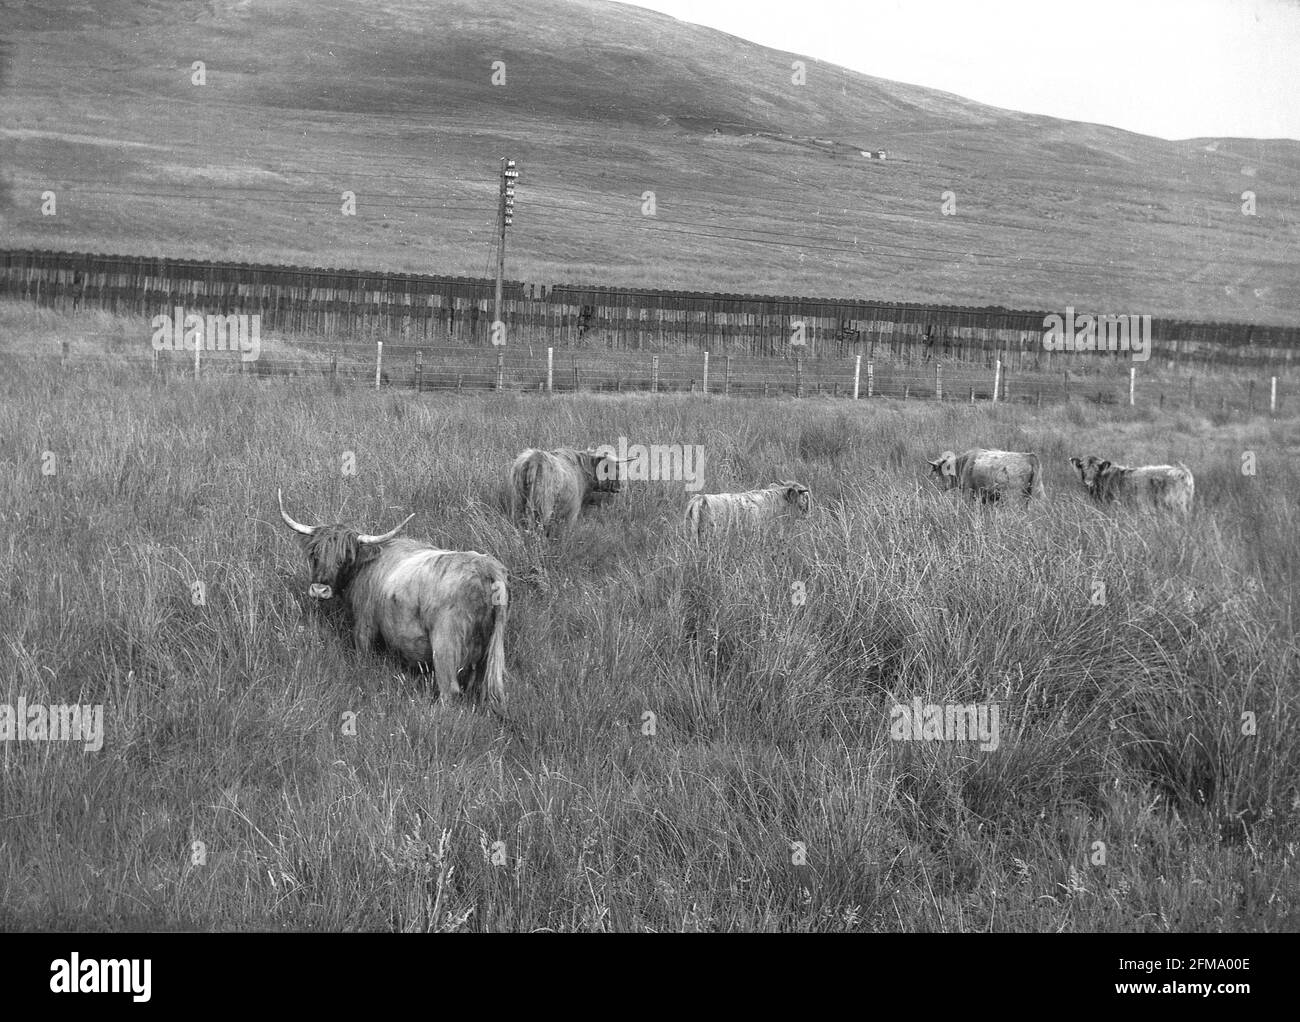 1956, historique, élevage de bétail dans un champ, avec de l'herbe longue, les Highlands, Écosse, Royaume-Uni. Banque D'Images